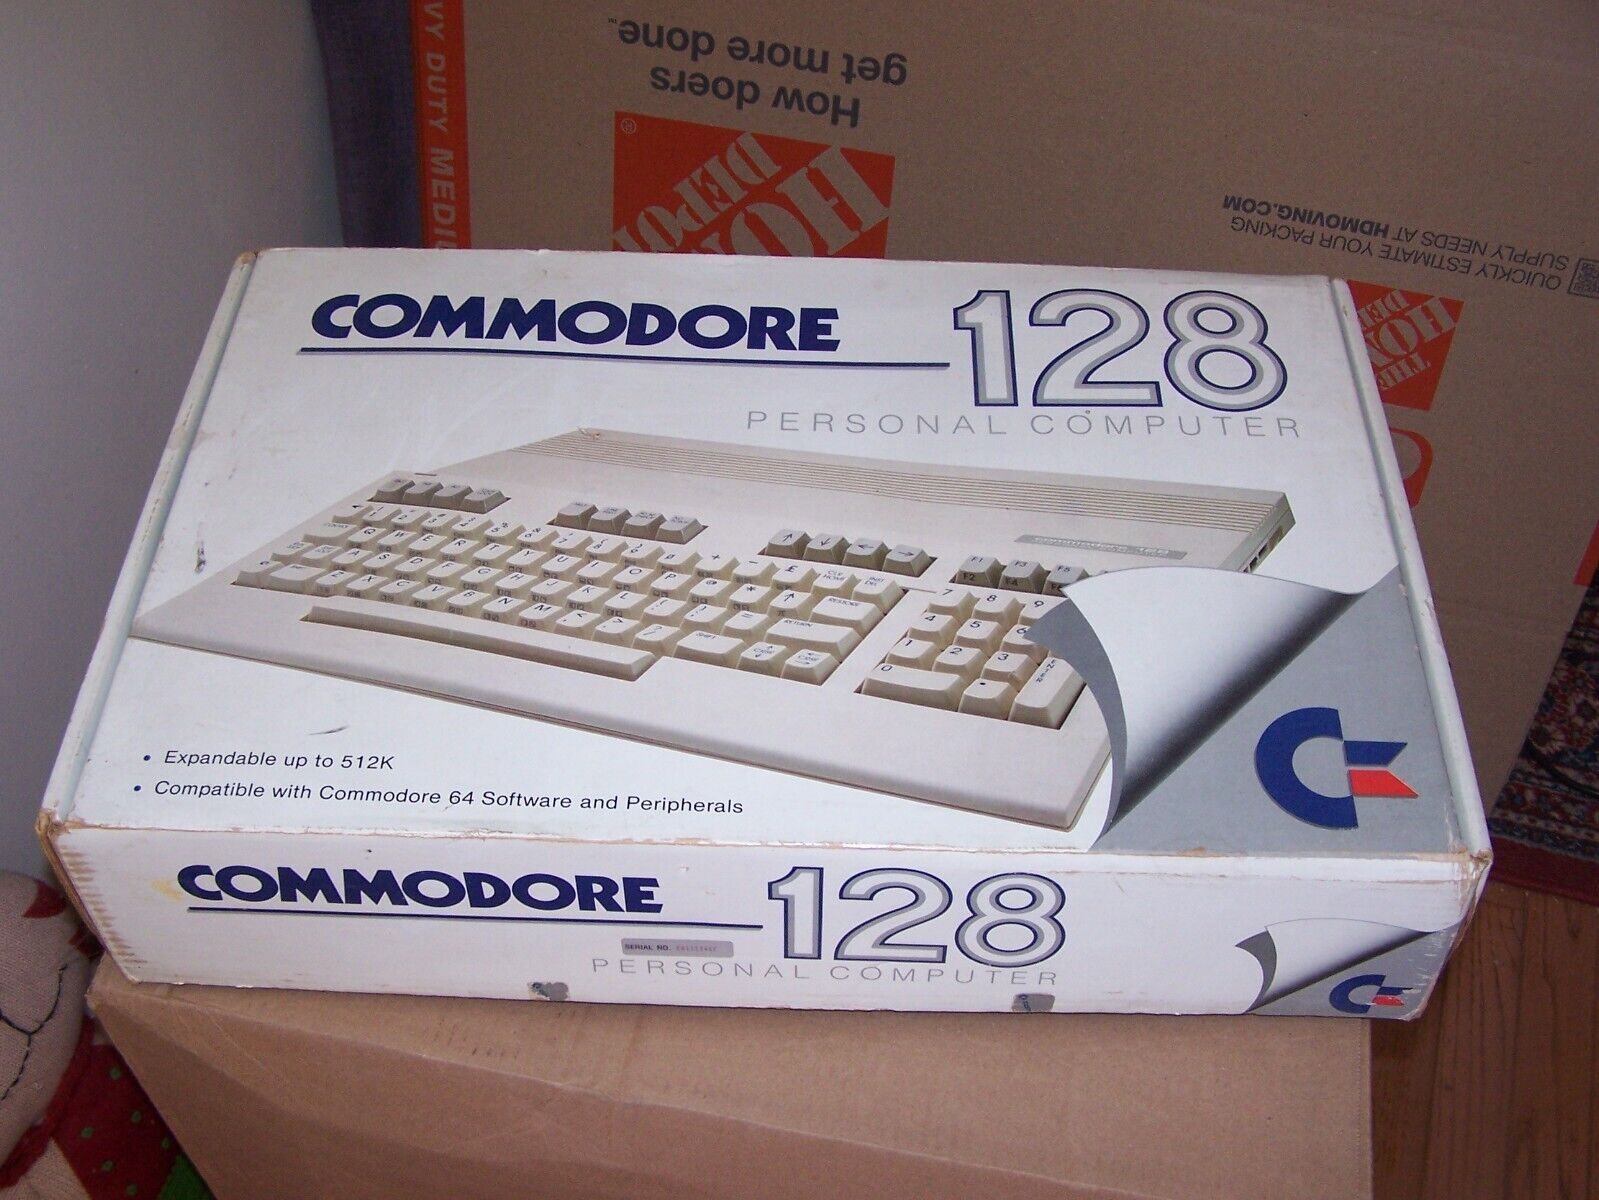 Commodore 128 Computer in original box - Estate find